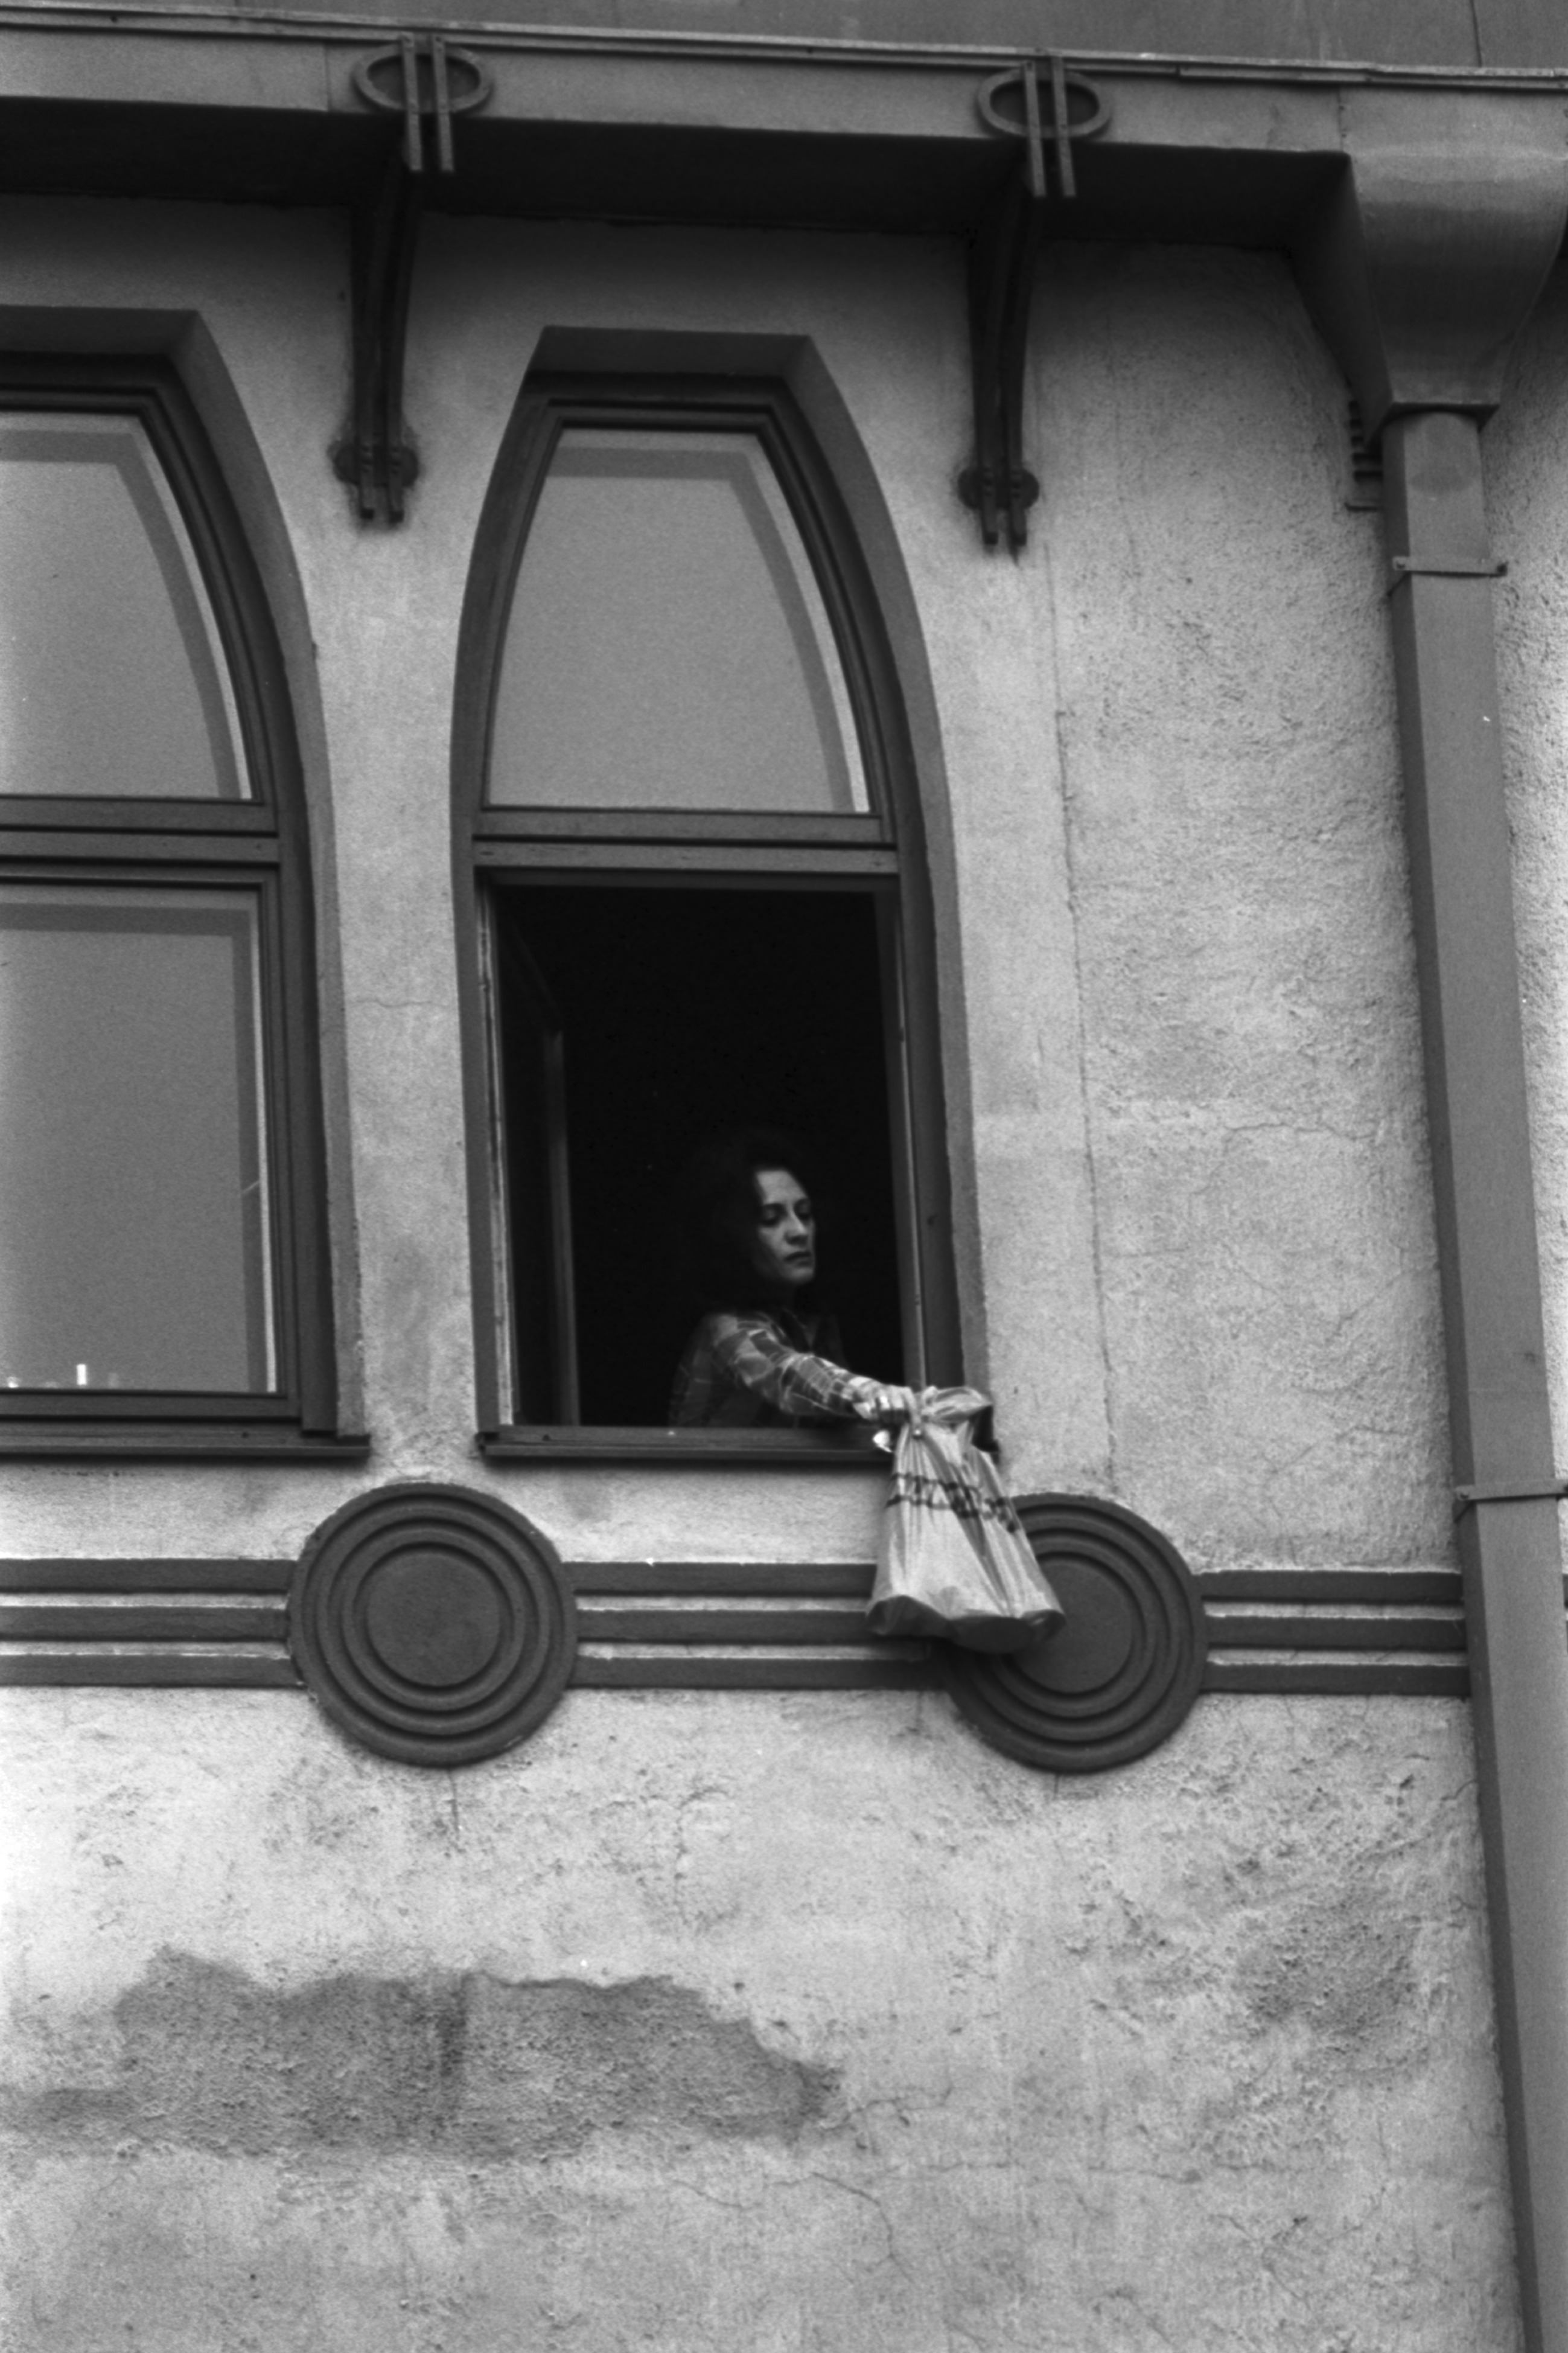 Meritullinkatu 26. Nainen ripustamassa Valintatalon muovikassia asuntonsa ikkunan ulkopuolelle Meritullinkatu 26:n ylimmässä kerroksessa.